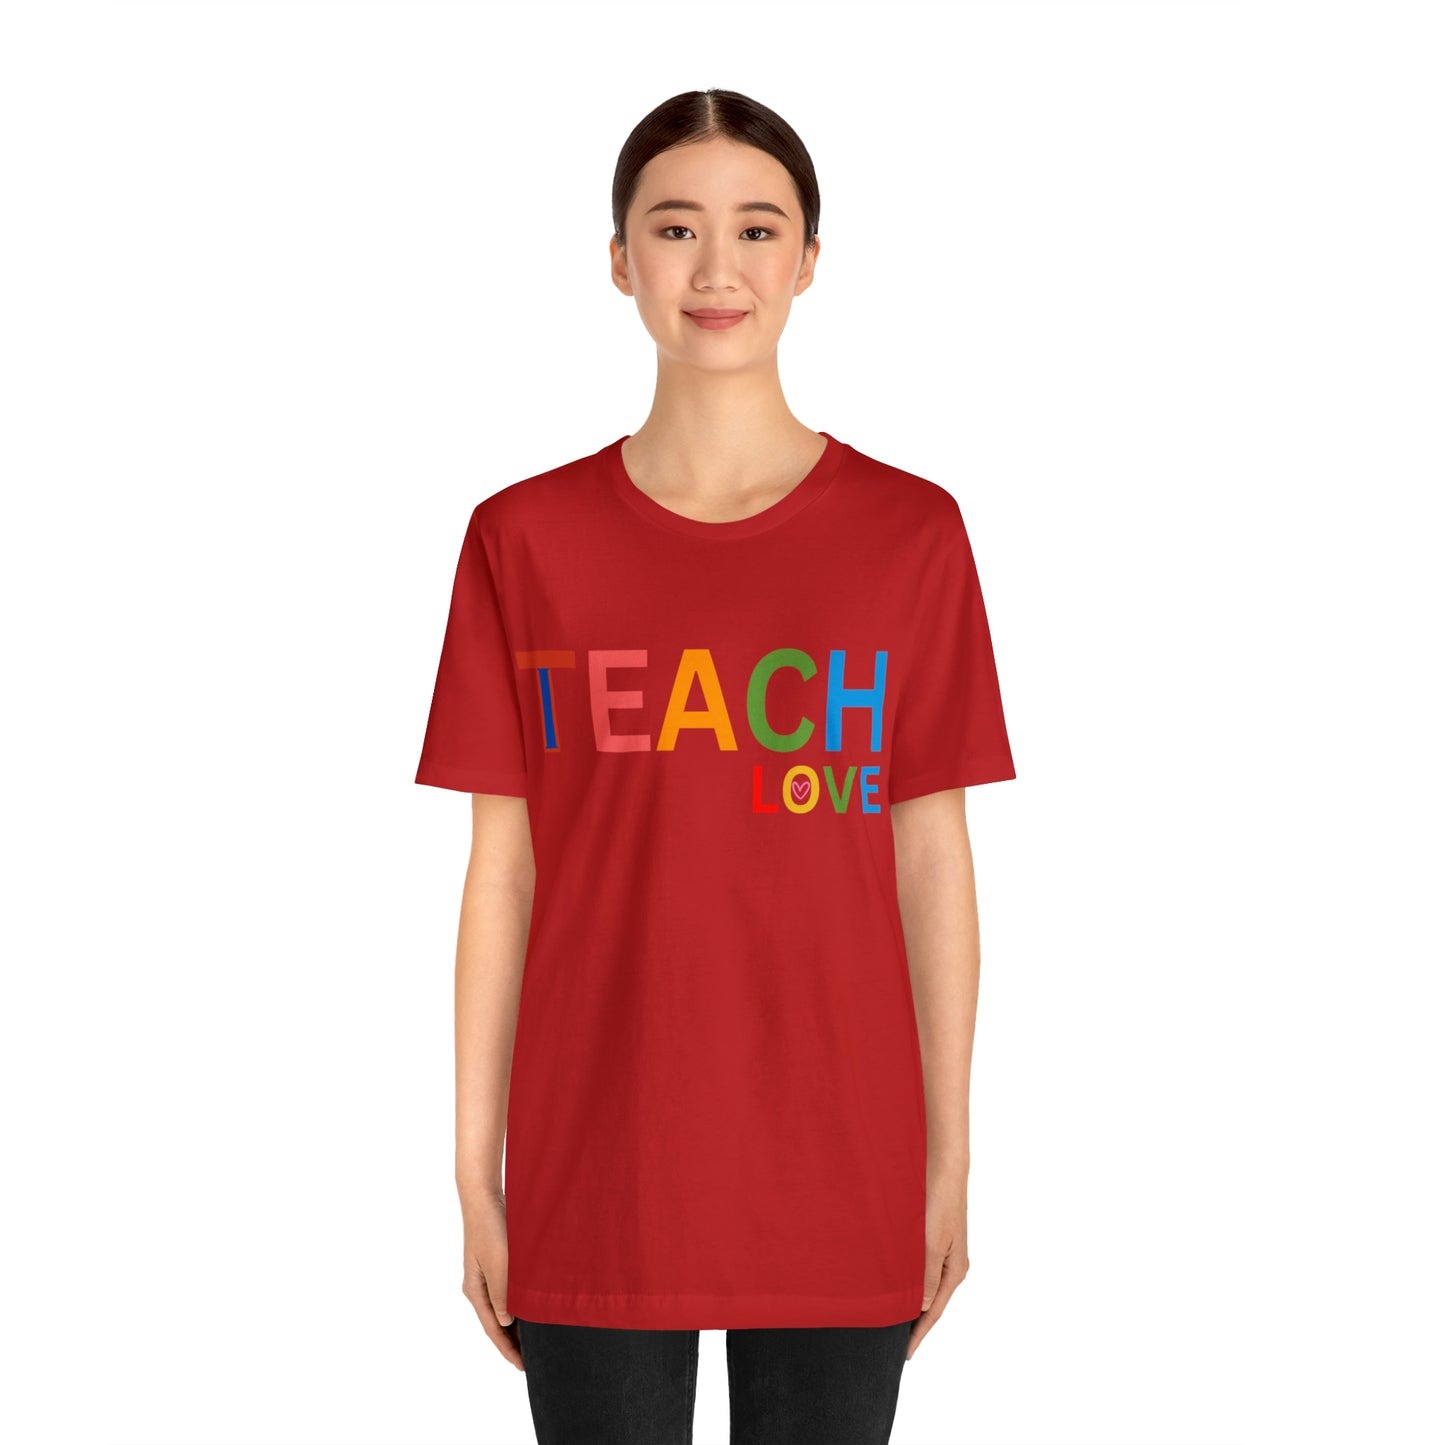 I Teach Love Shirt, Teacher Shirt, Teacher Appreciation Gift for Teachers